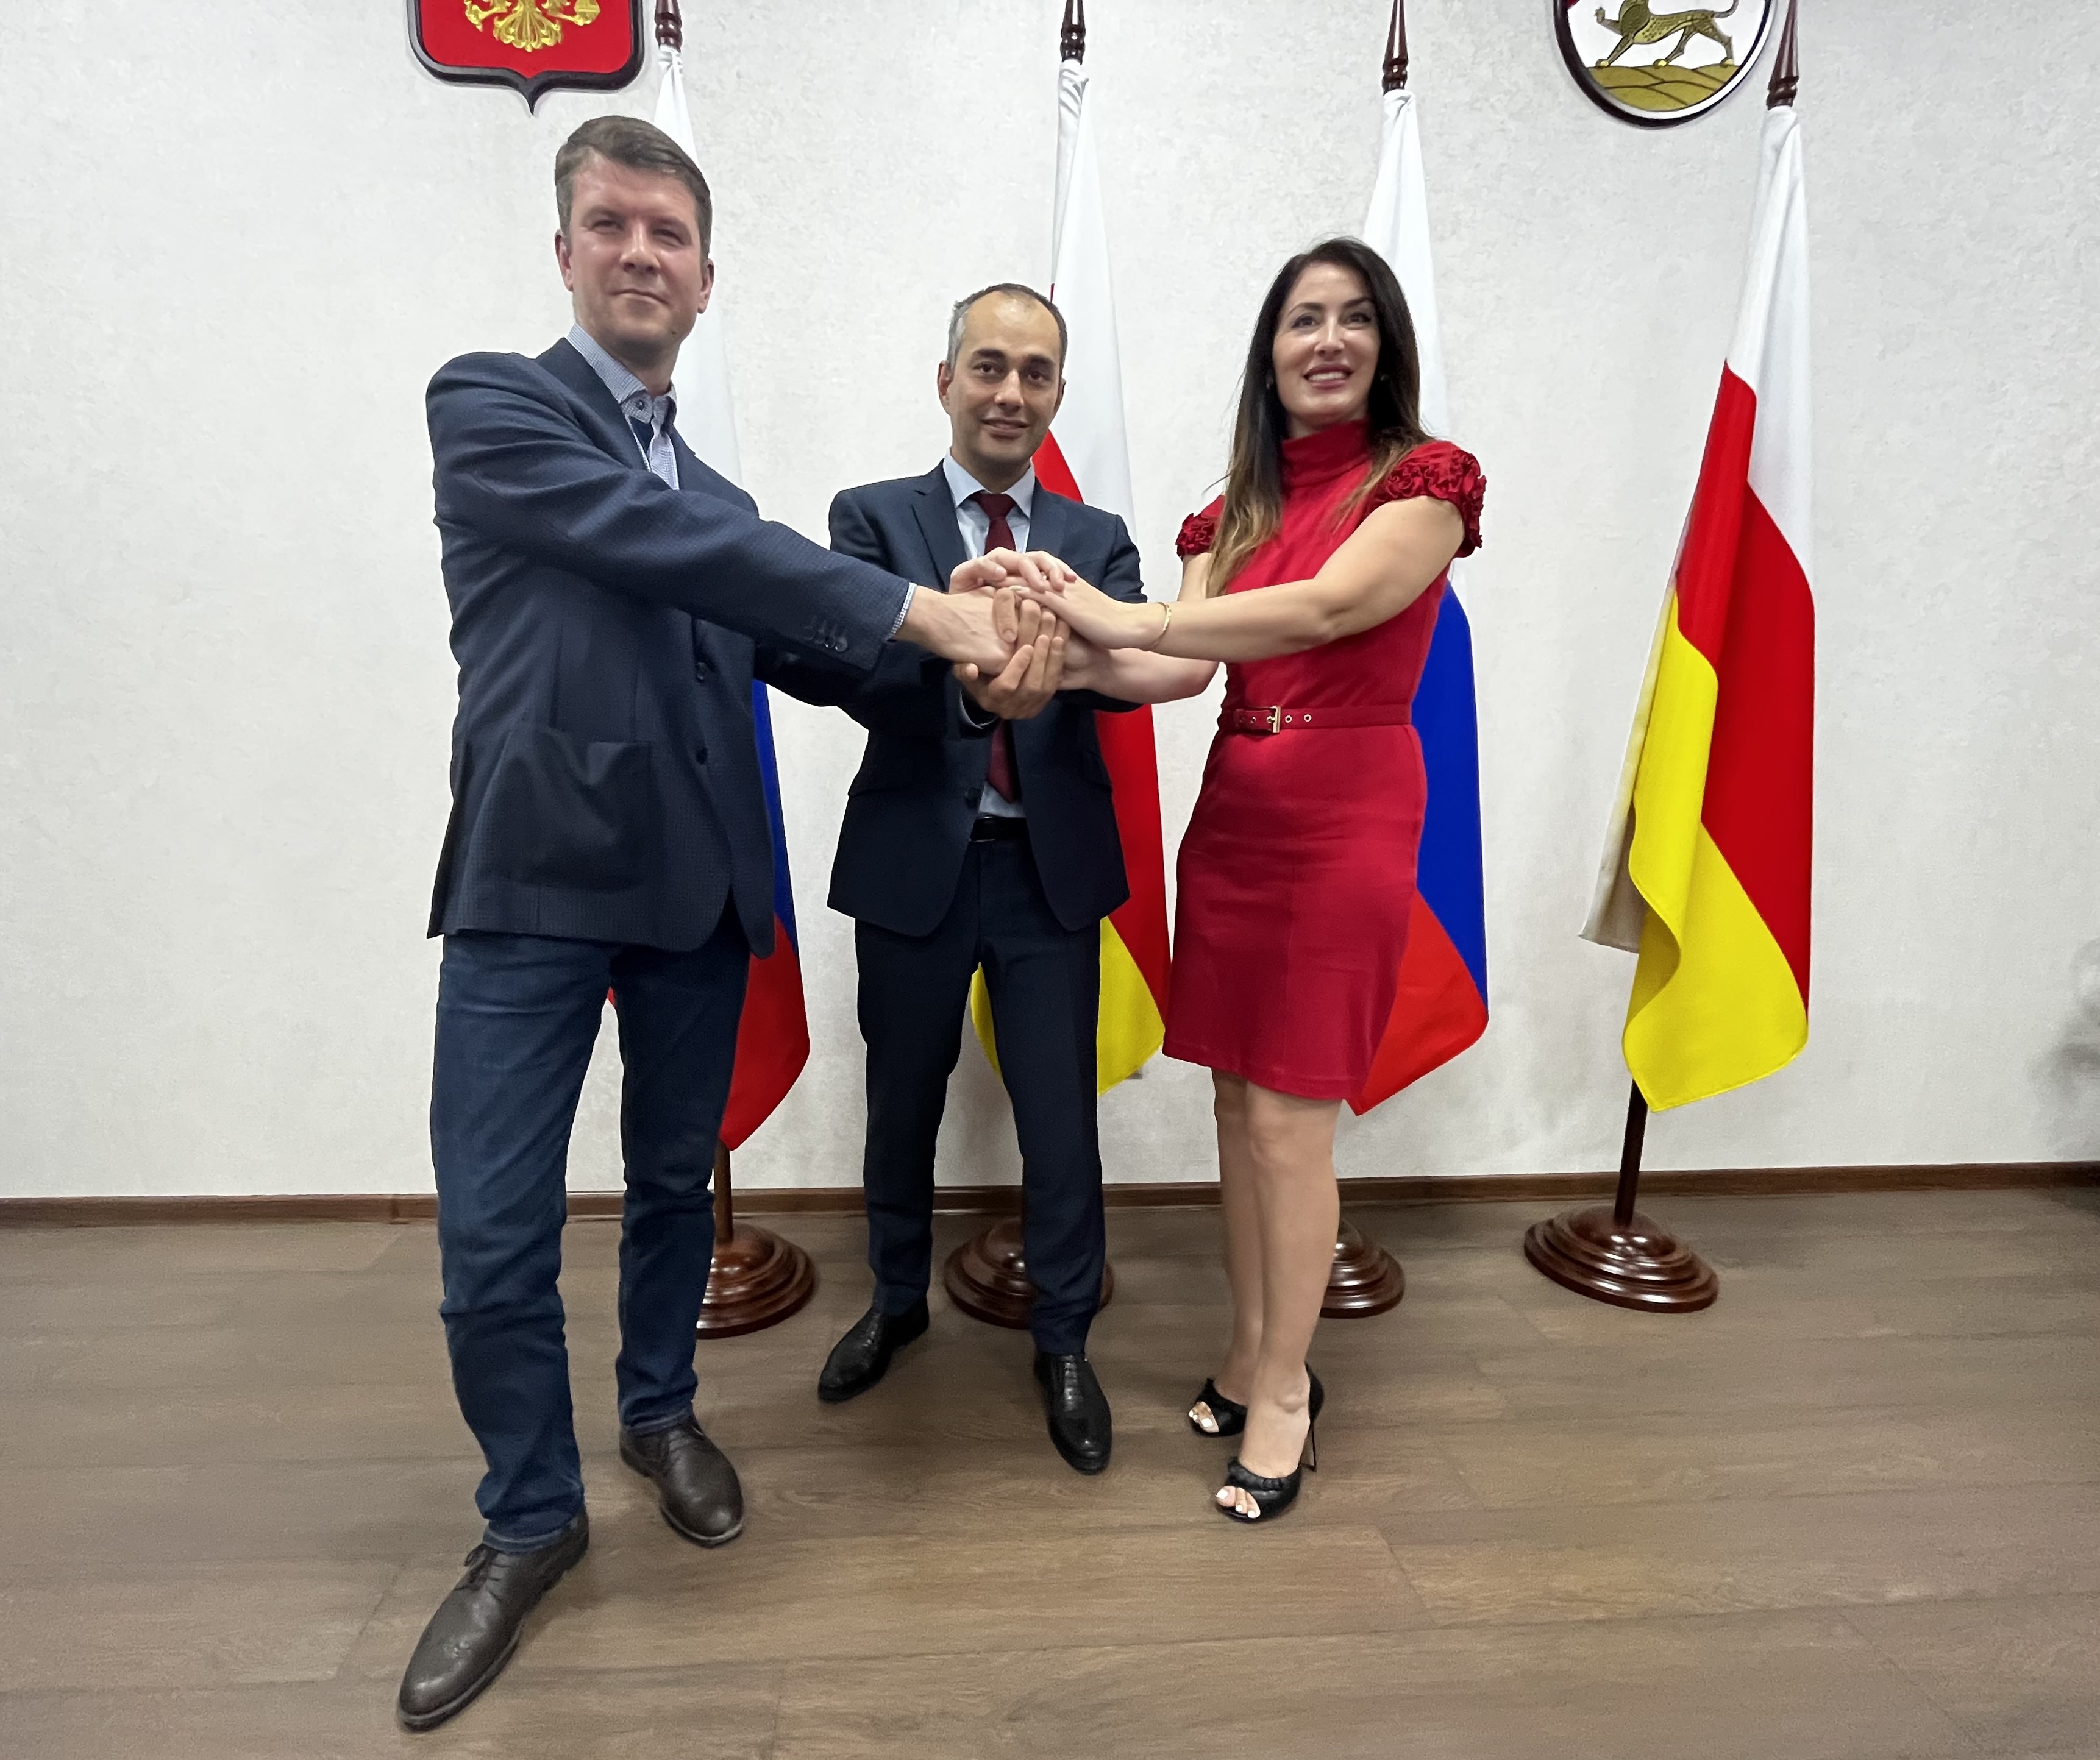 Комитет по туризму Северной Осетии и два туроператора договорились развивать туризм в регионе